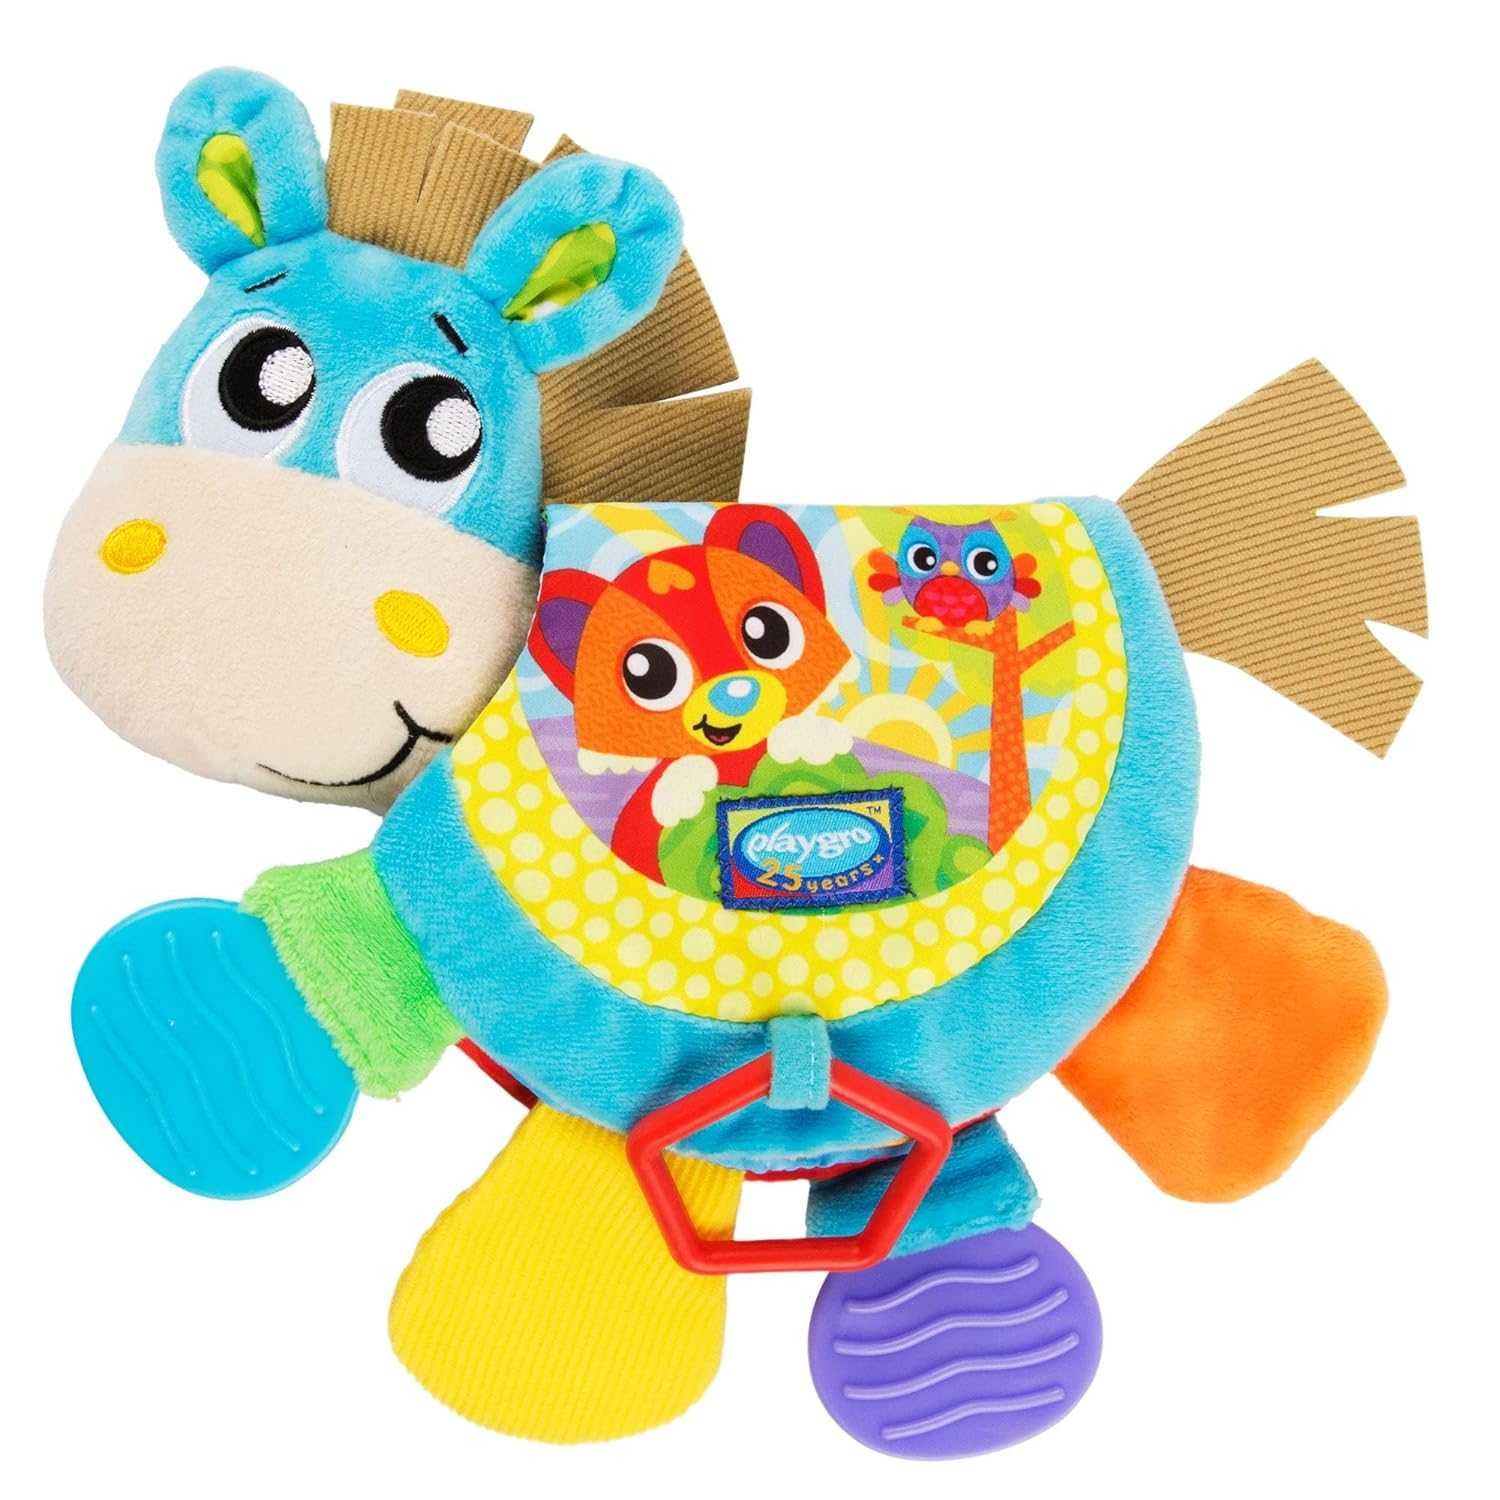 Playgro Klipp składany koń, książka  obrazkowa, zabawka dla niemowląt